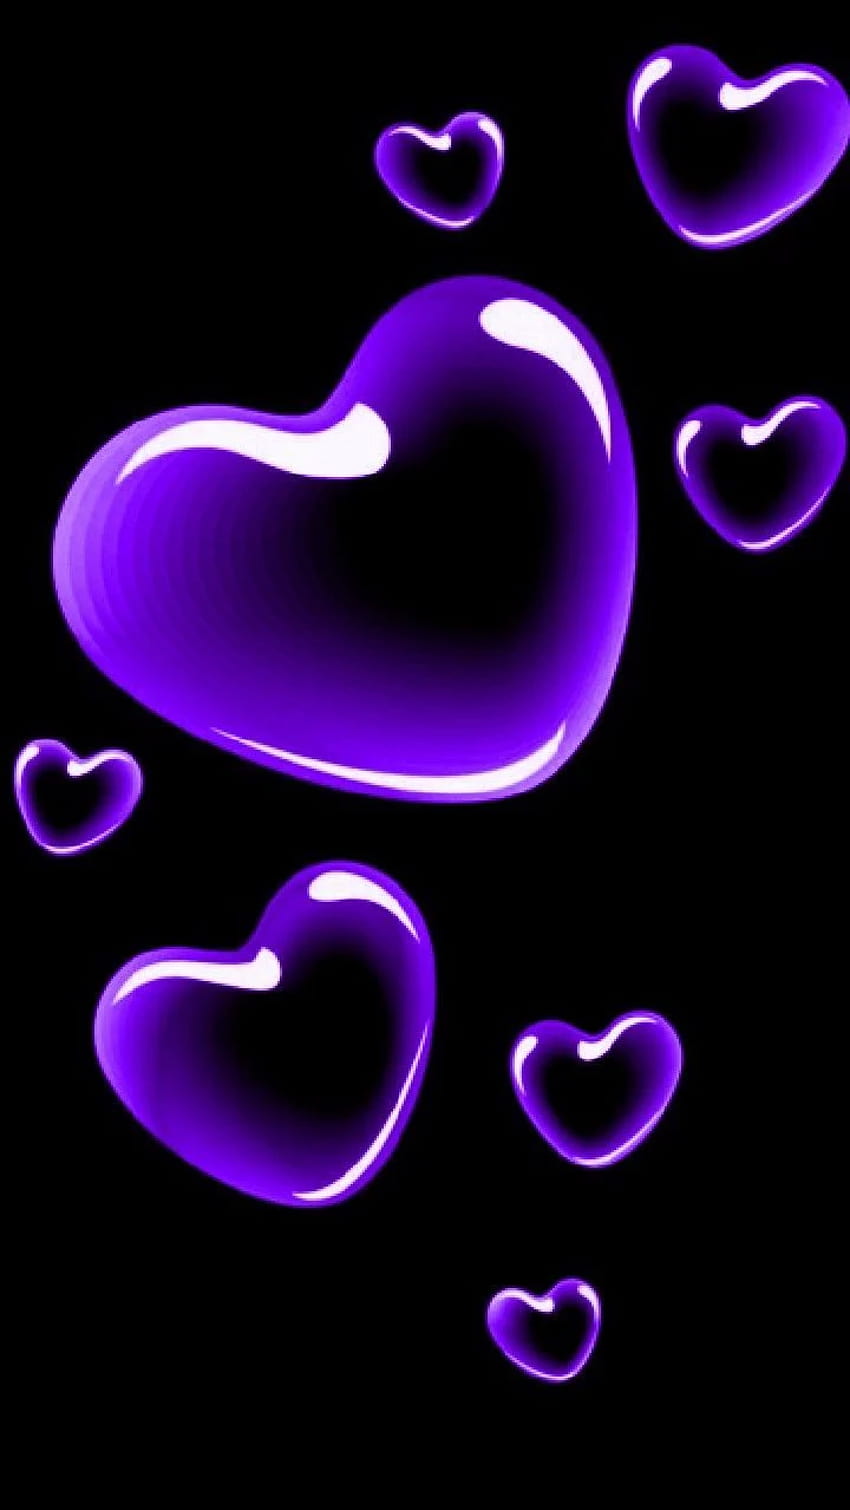 Purple Heart wallpaper  Heart wallpaper Heart iphone wallpaper Purple  wallpaper iphone